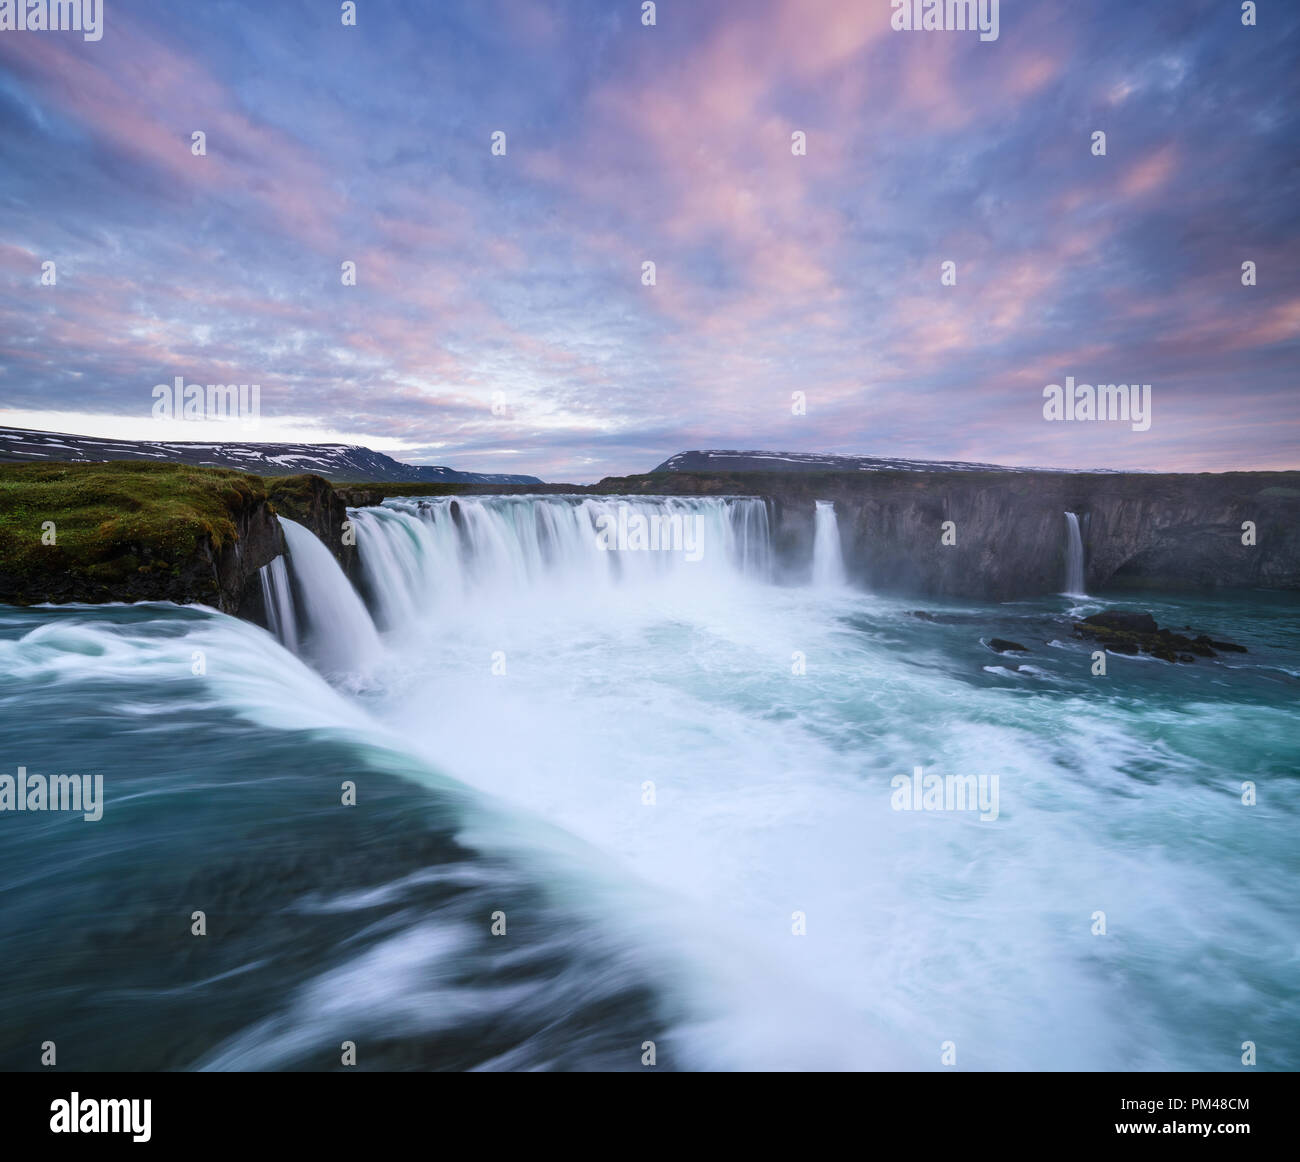 Godafoss Wasserfall. Natürliche und touristische Attraktion von Island. Landschaft mit einer Kaskade auf dem Fluss und einen schönen Himmel bei Sonnenuntergang Stockfoto